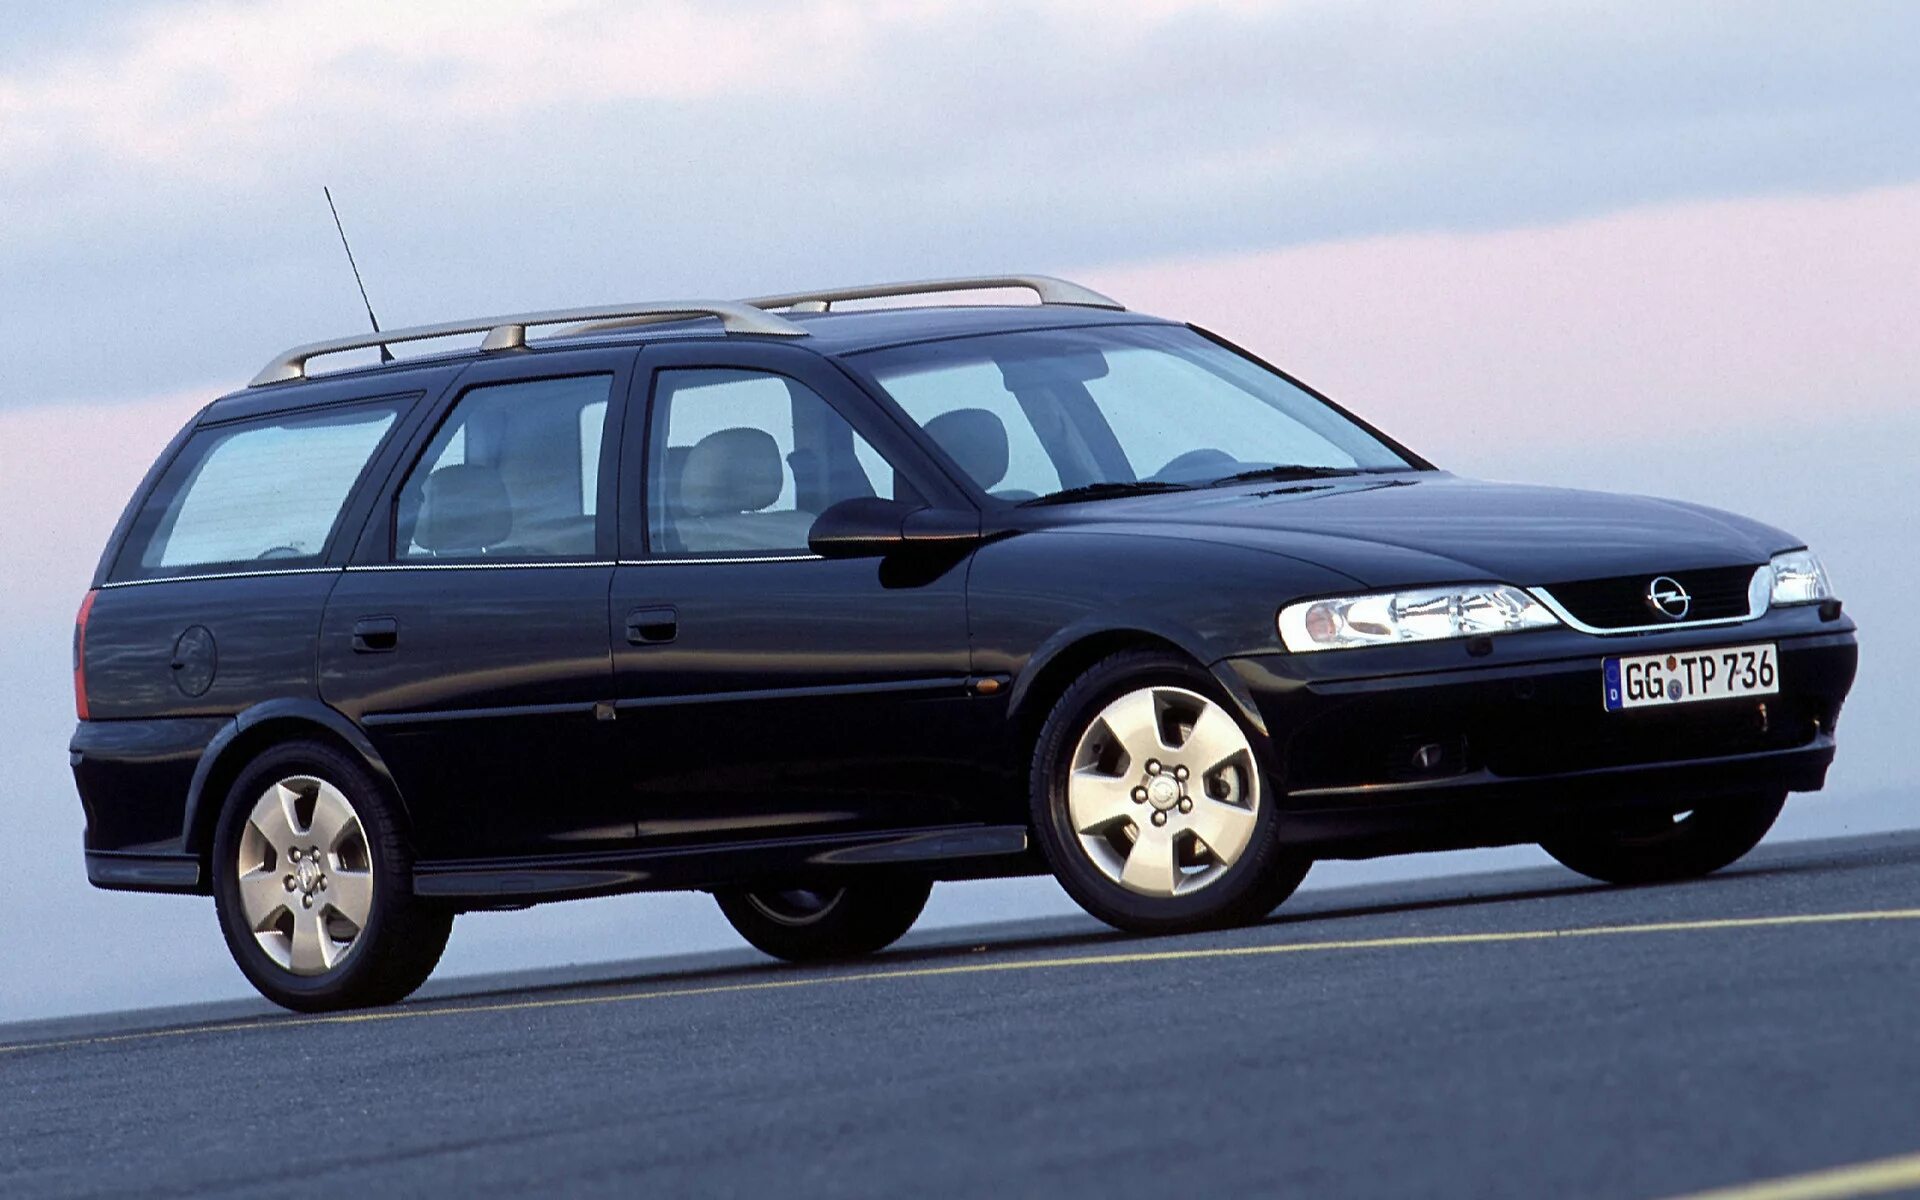 Opel Vectra 2000 универсал. Opel Vectra b 2001 универсал. Opel Vectra b 1998 универсал. Opel Vectra b универсал 2002. Вектра караван